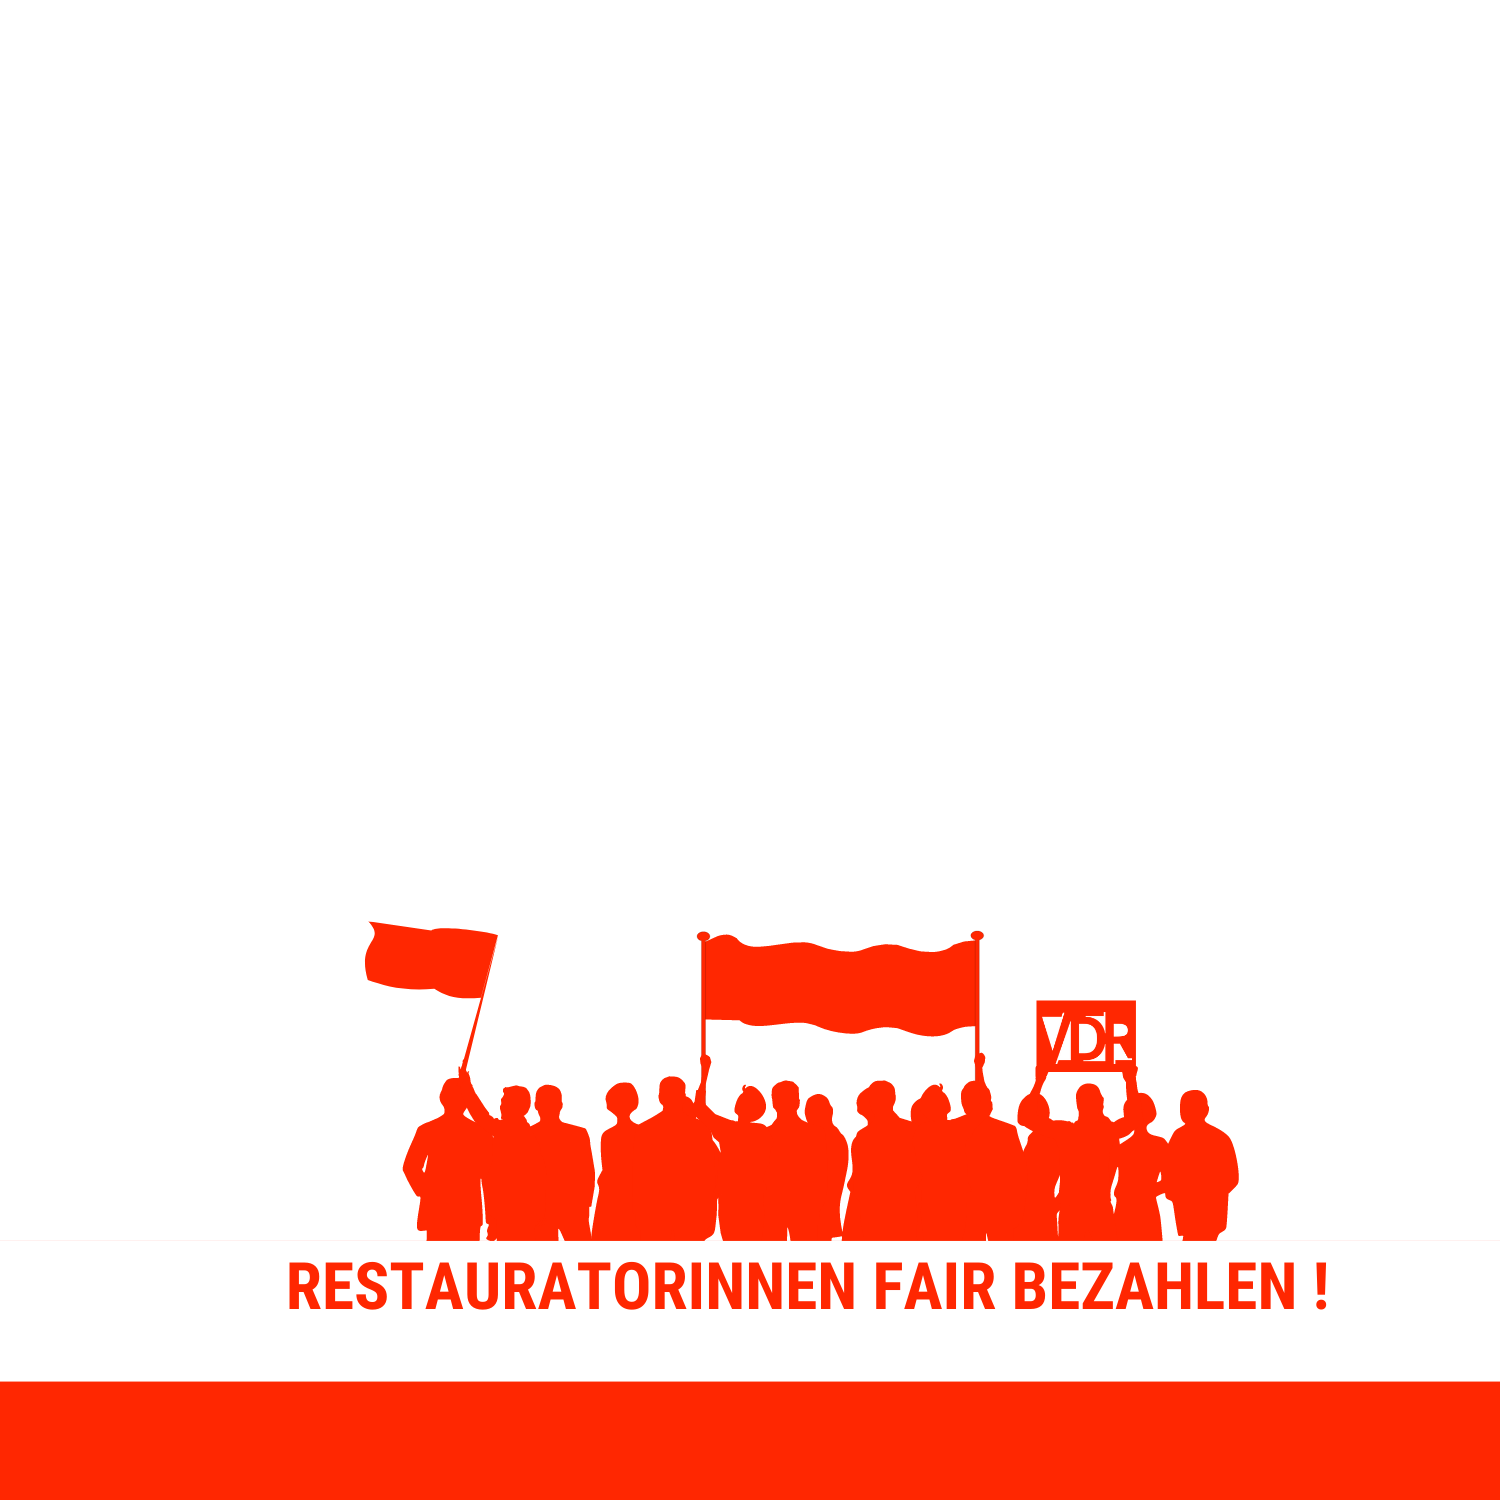 Facebook-Design mit "Restauratorinnen" im Schriftzug.